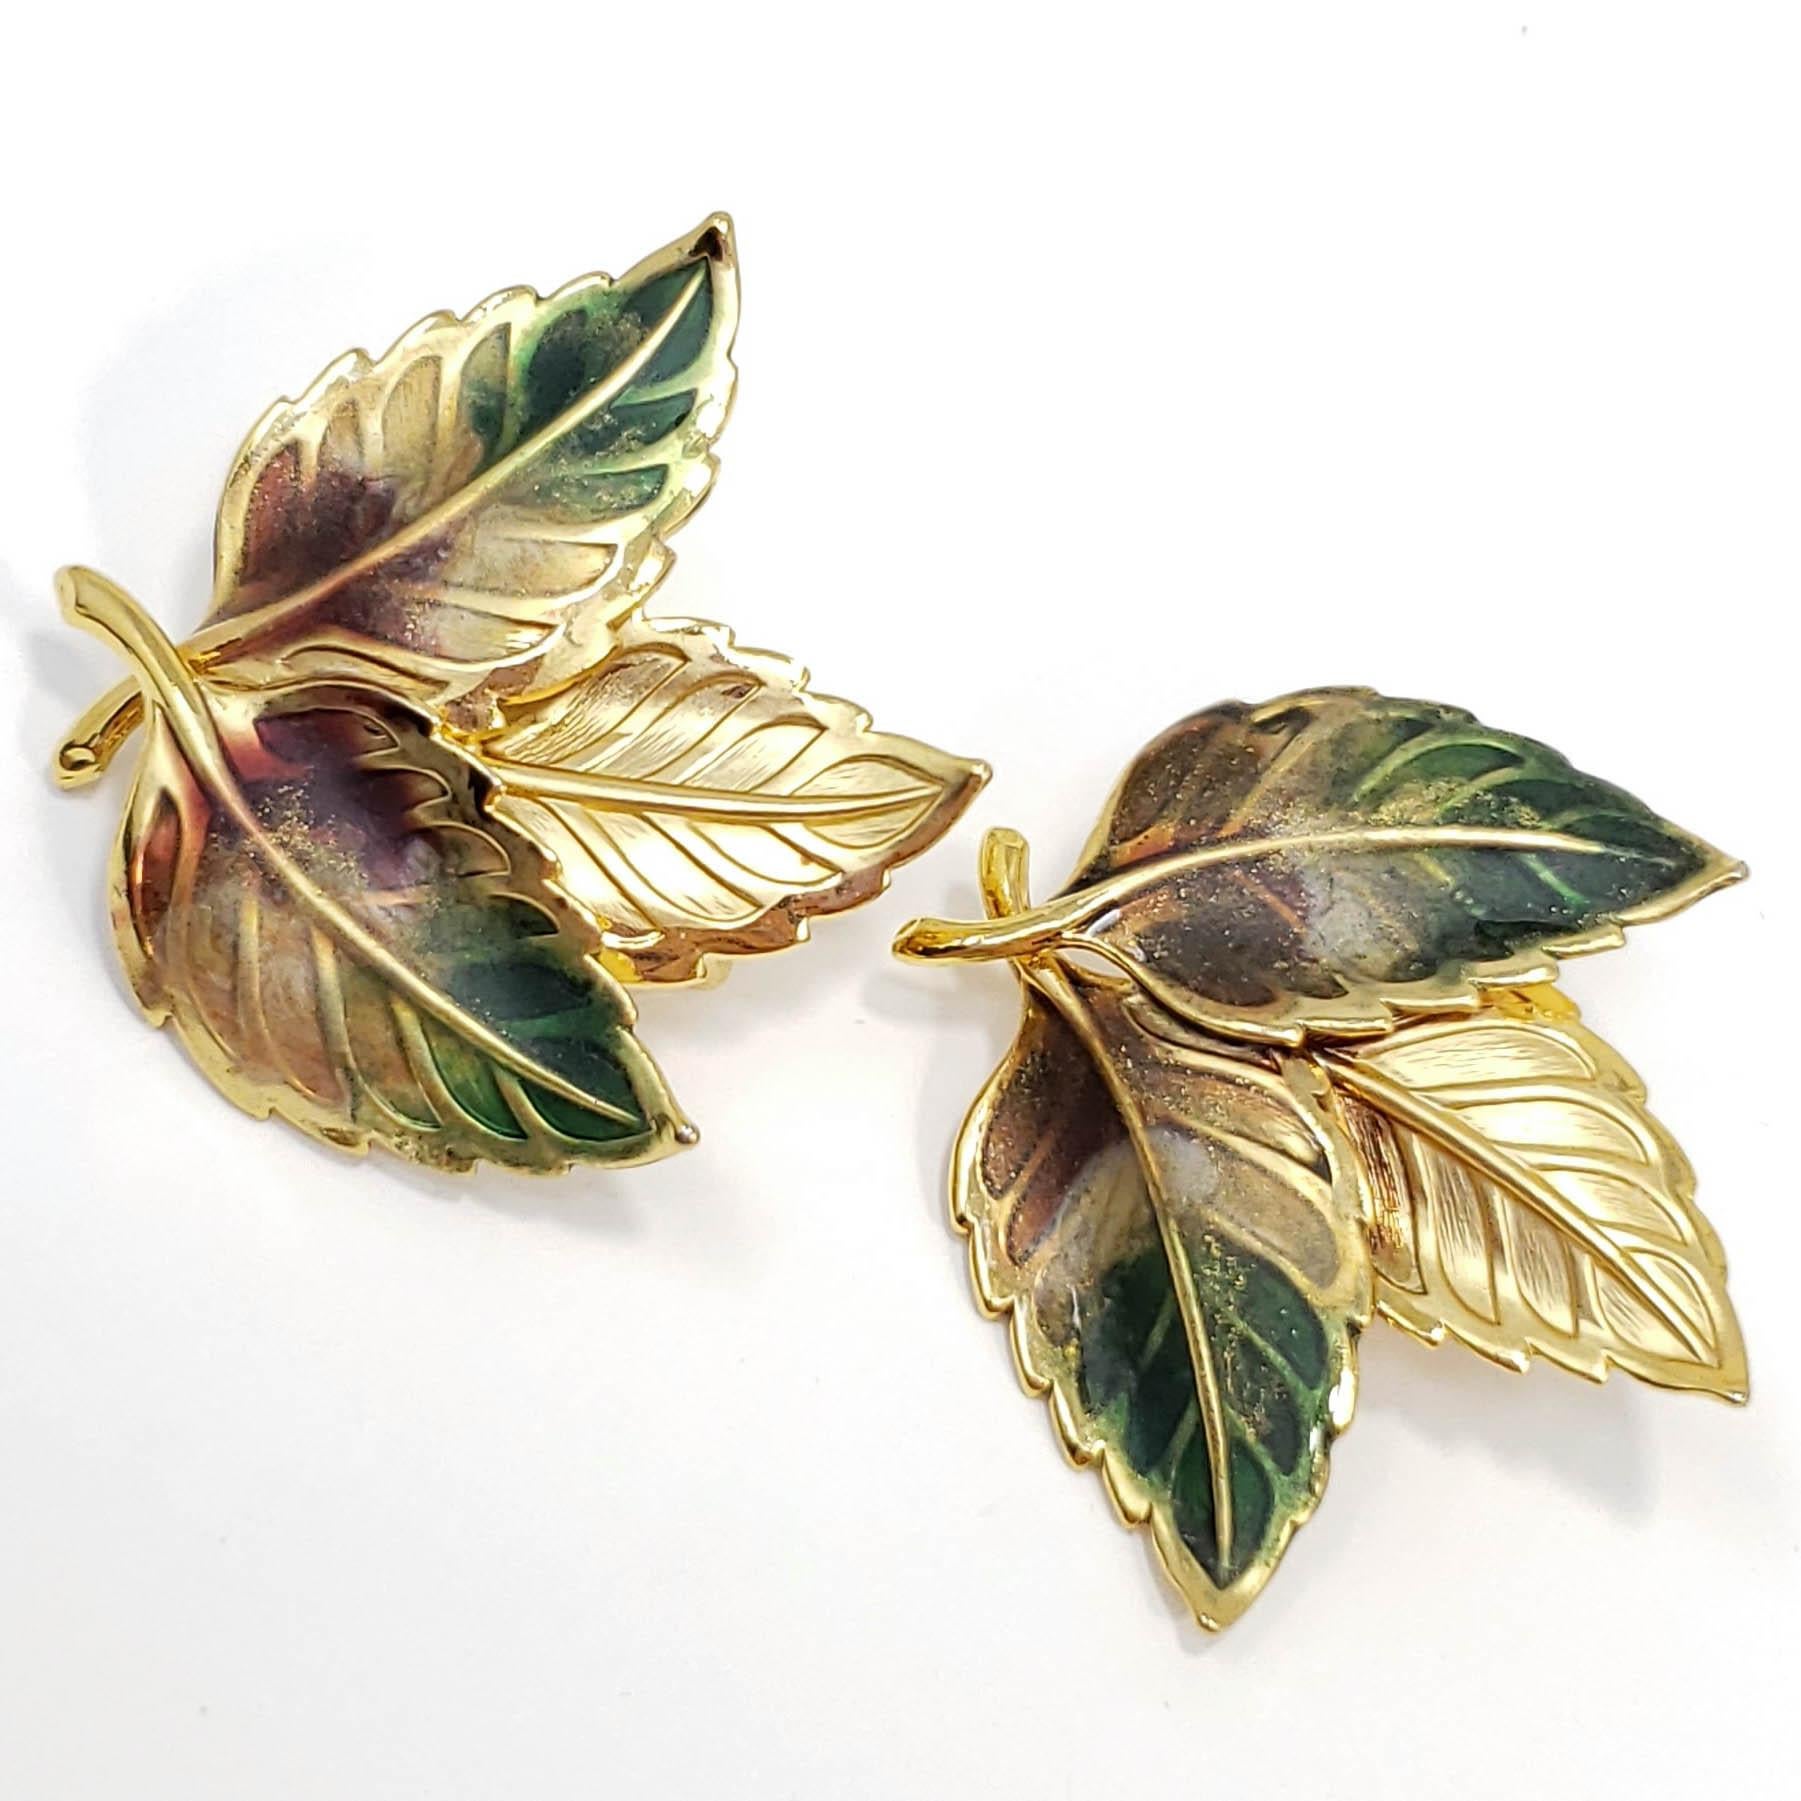 Ein Paar Vintage-Ohrringe mit Blumenmotiv. Drei zarte, in Grün und Braun gemalte Blätter in einer goldfarbenen Metallfassung. Ein klassischer Stil, der Ihre natürliche Schönheit hervorhebt!

Ausgezeichneter Zustand. Um die Mitte des 19. Jahrhunderts.